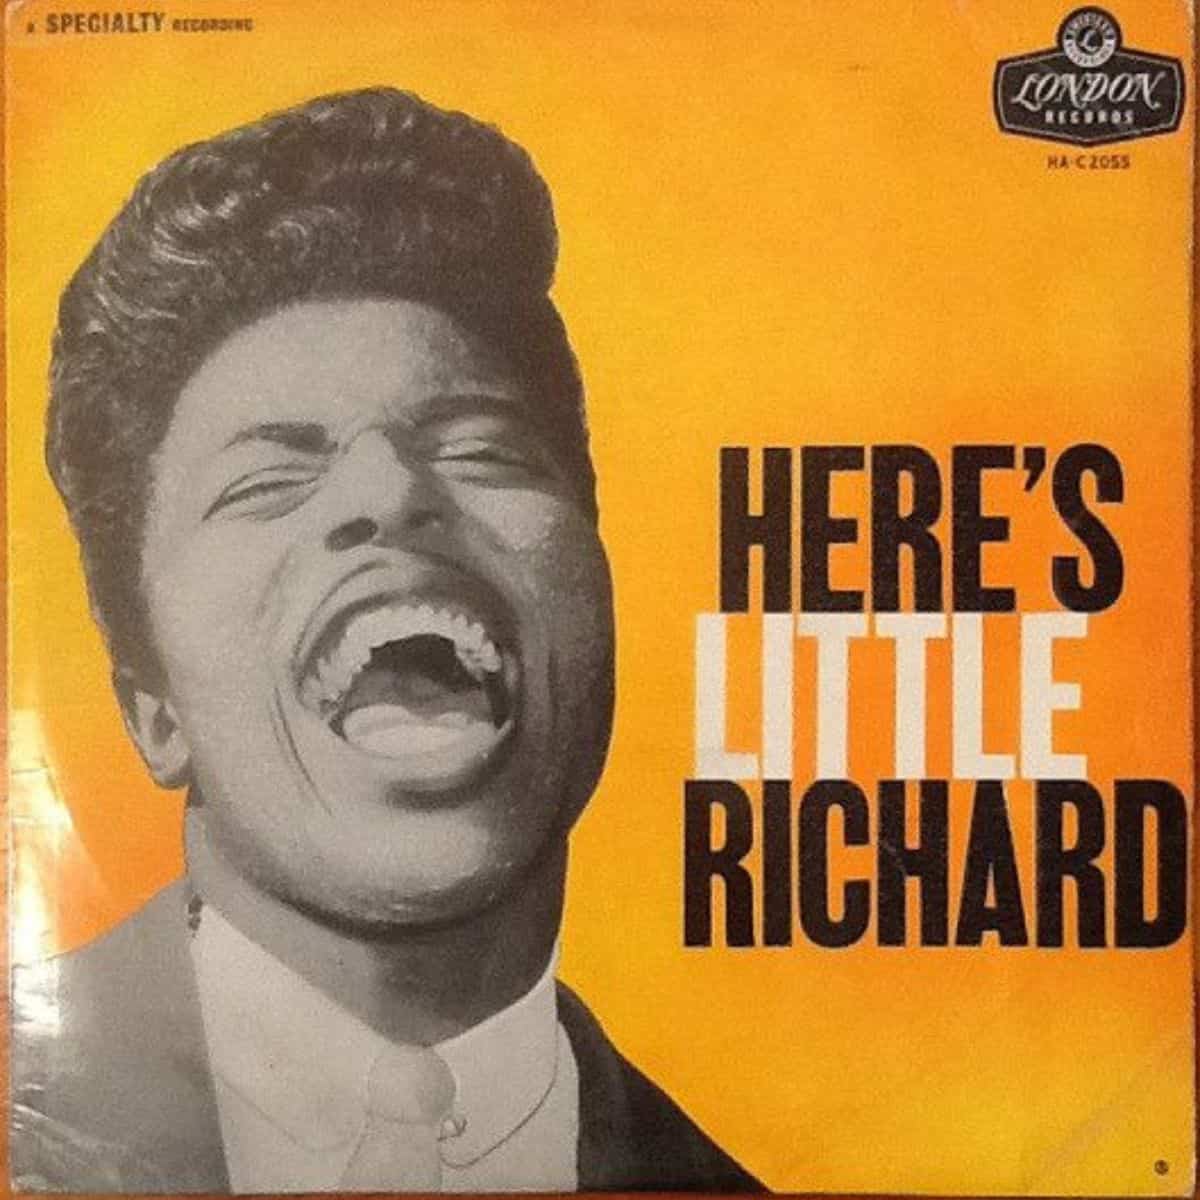 Little Richard album cover